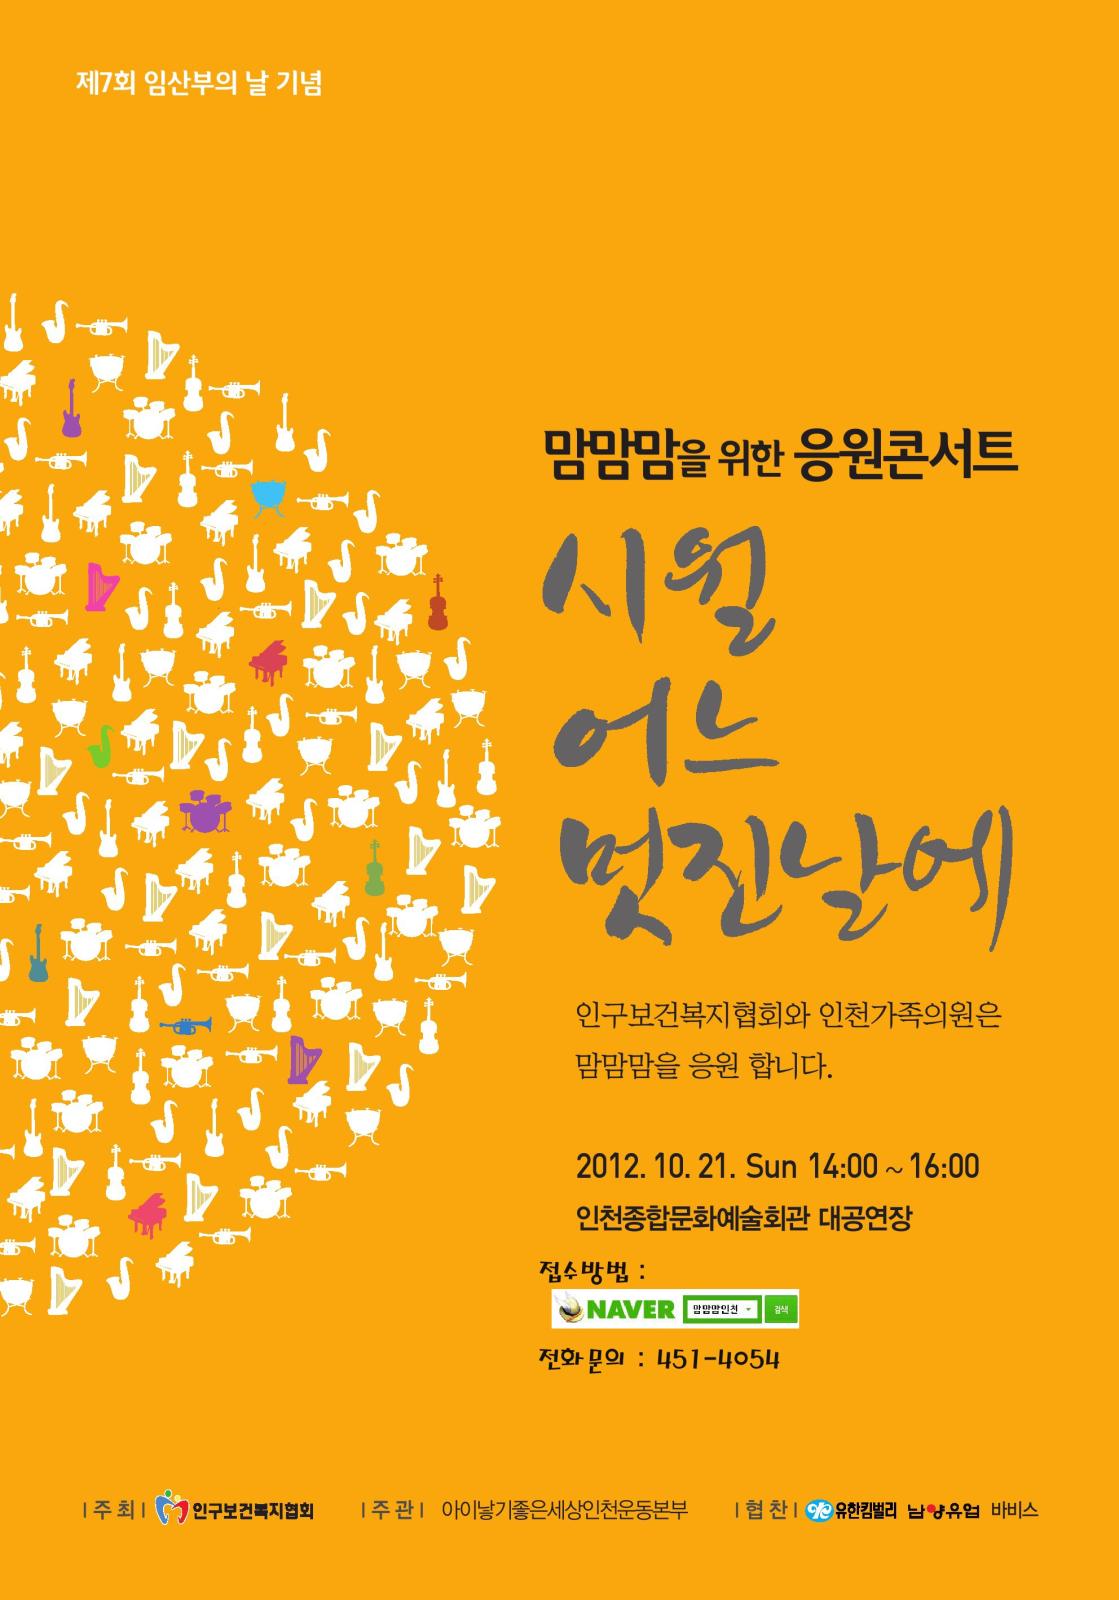 제7회 임산부의 날 기념 『맘맘맘 콘서트』개최 안내의 1번째 이미지